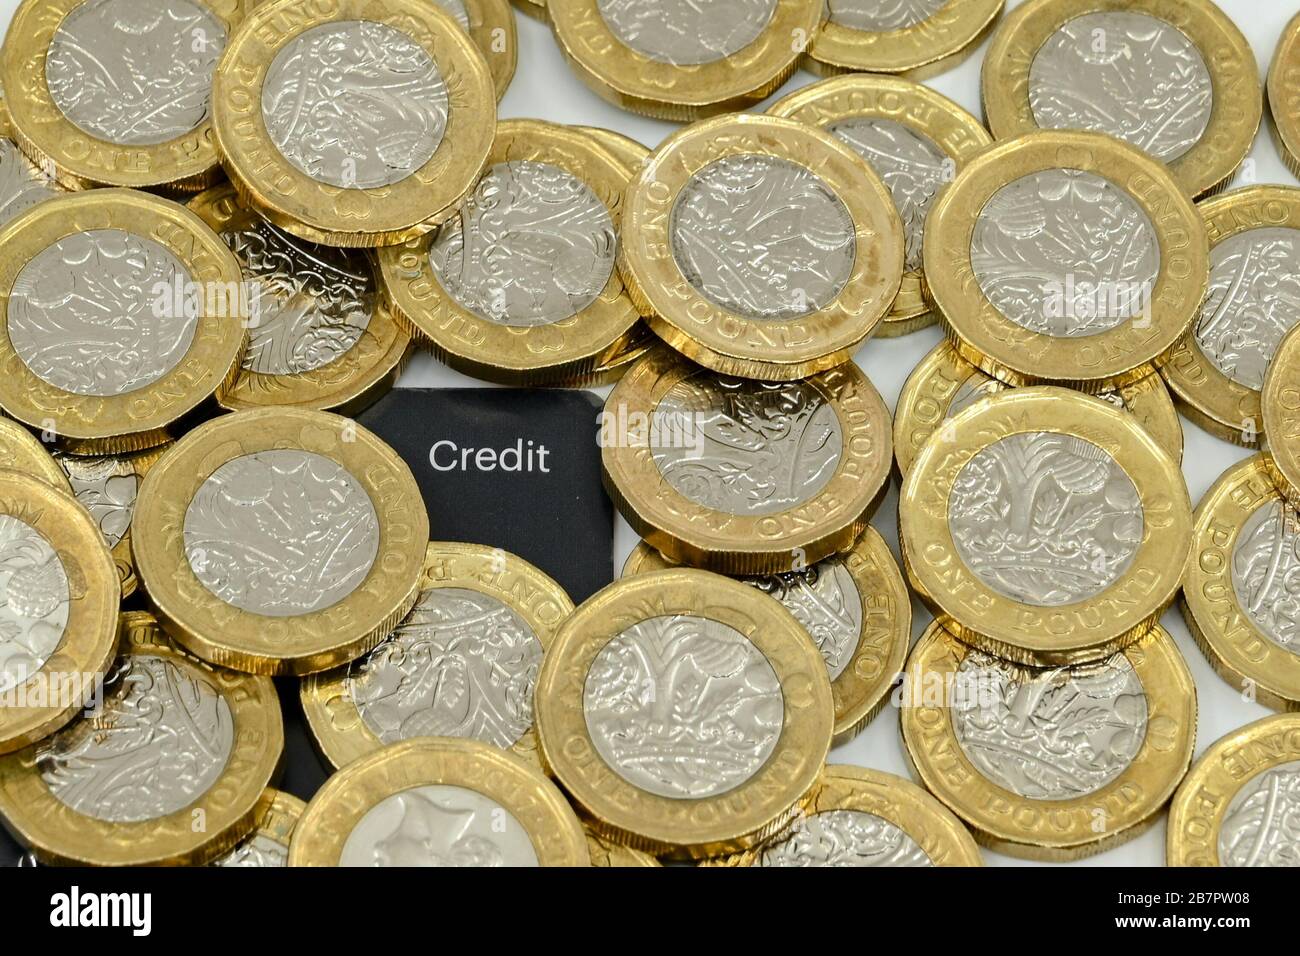 LONDON, Großbritannien - JANUAR 2020: Nahaufnahme der britischen Währung Great British Pound GBP - One Pound Coins um die Ecke einer Kreditkarte Stockfoto